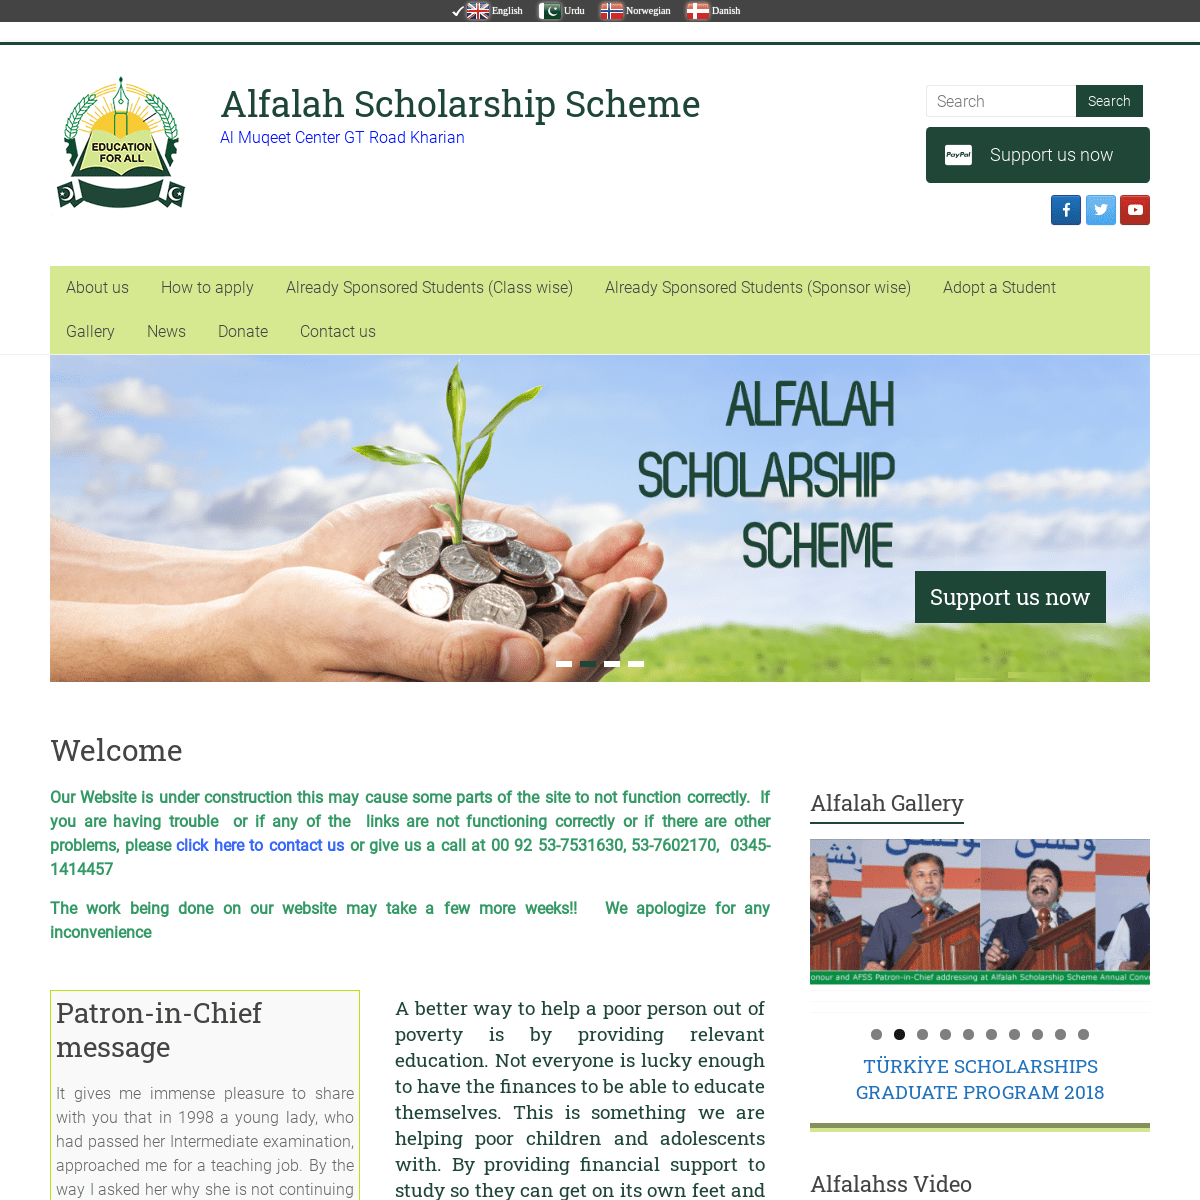 alfalah scholarship form